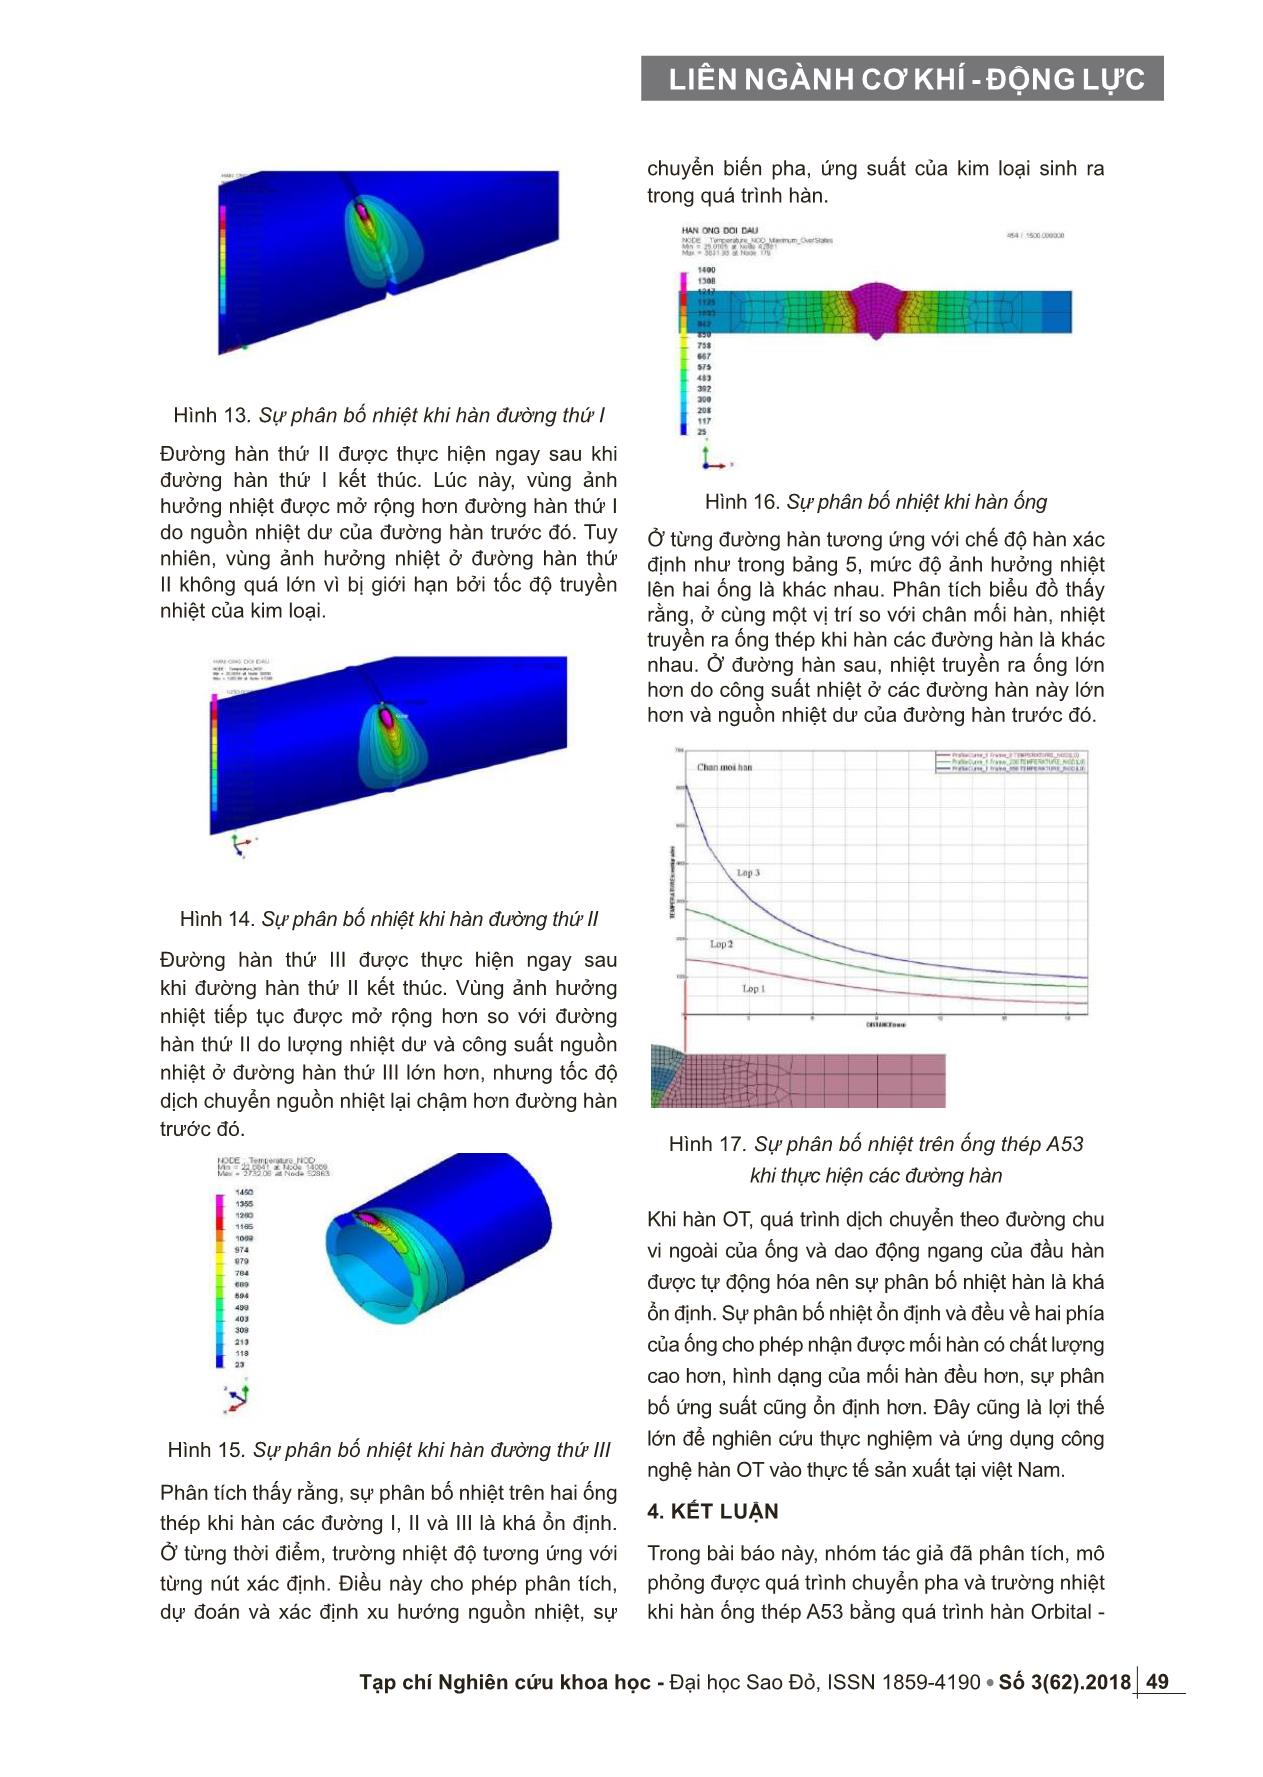 Nghiên cứu mô phỏng sự chuyển pha và trường nhiệt khi hàn ống thép A53 bằng quá trình Orbital – TIG trang 5